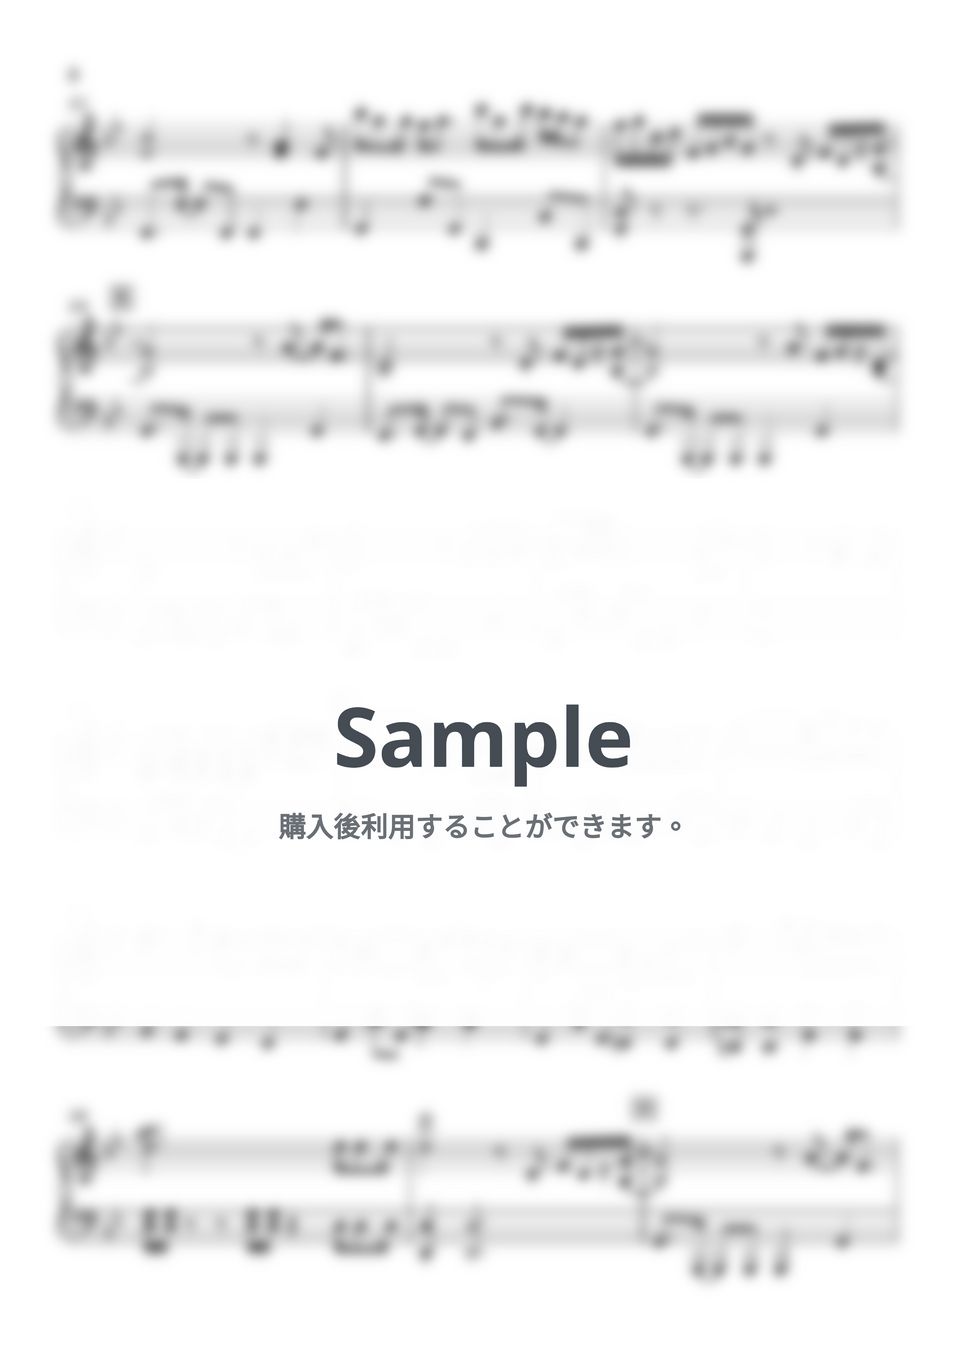 大野雄二 - ルパン三世のテーマ’79 (ピアノ楽譜 / 中級) by Piano Lovers. jp